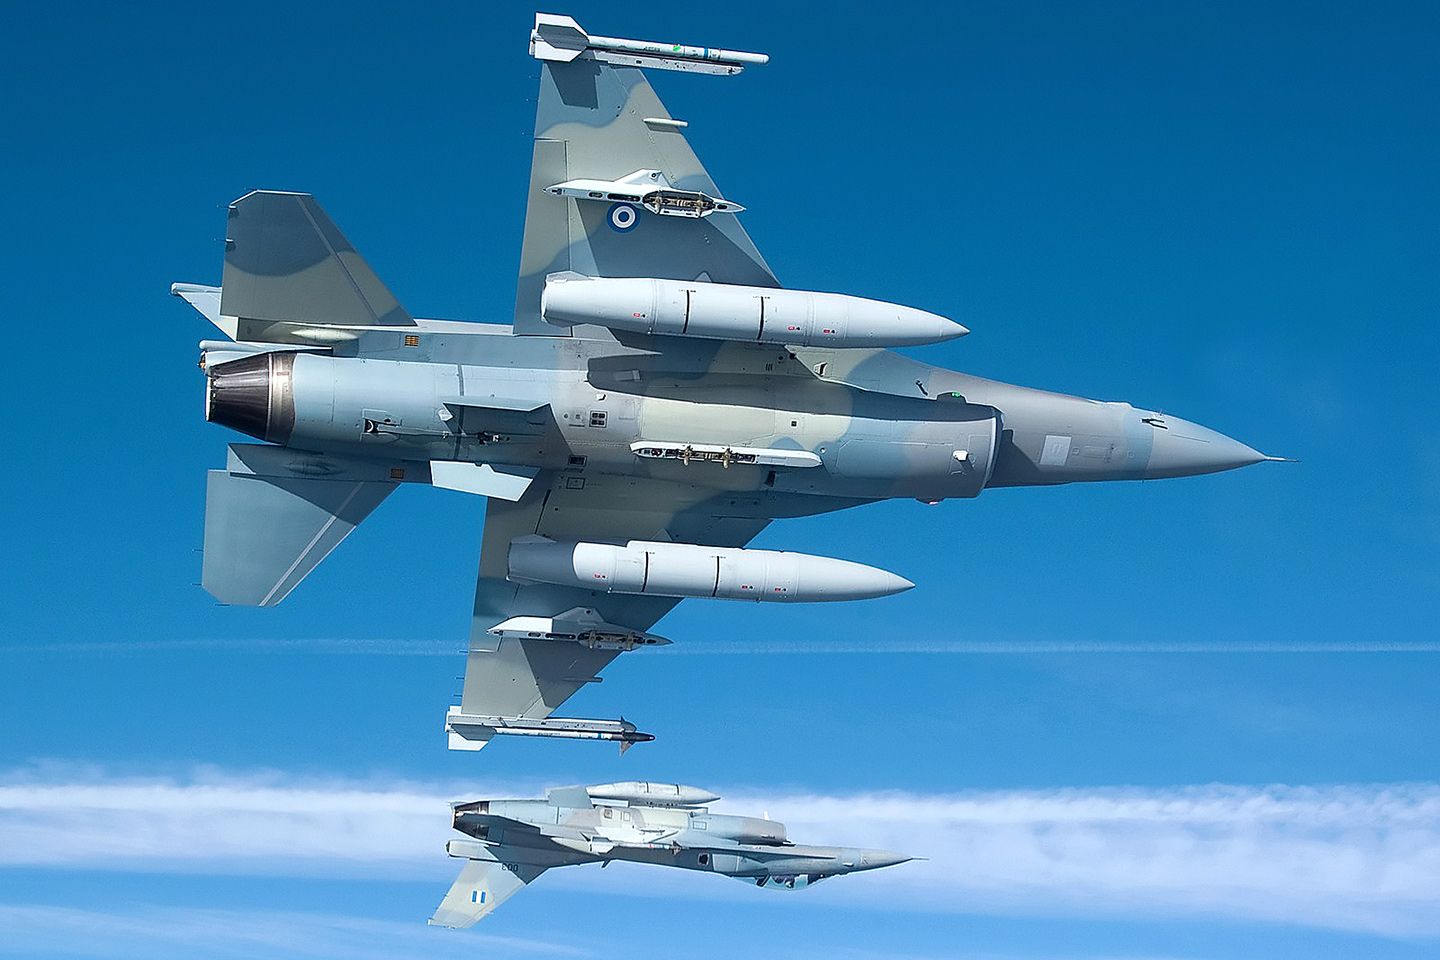 Βίντεο: Σφοδρή αερομαχία ελληνικών και τουρκικών F-16 πάνω από την Ικαρία